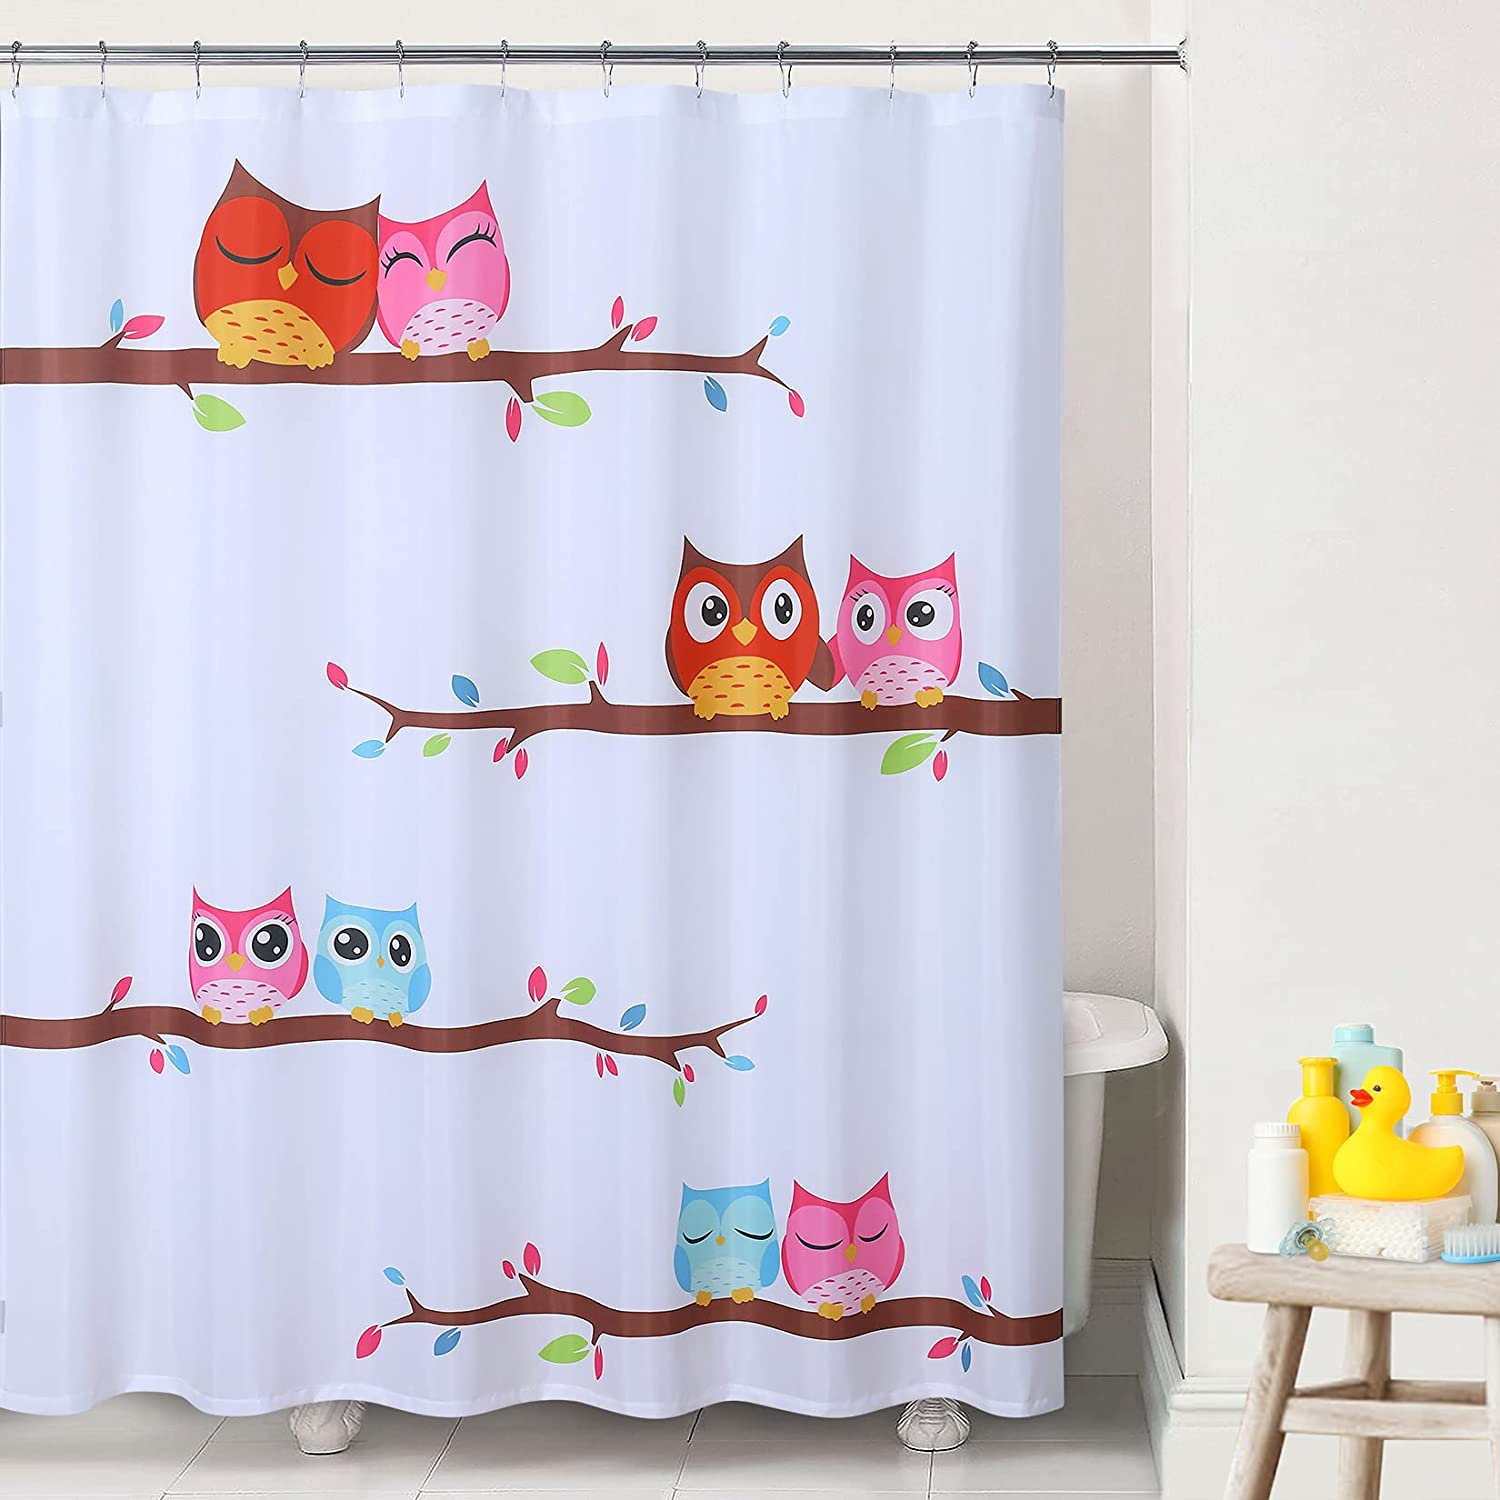 Cute Owl Waterproof Bathroom Polyester Shower Curtain Liner Water Resistant 